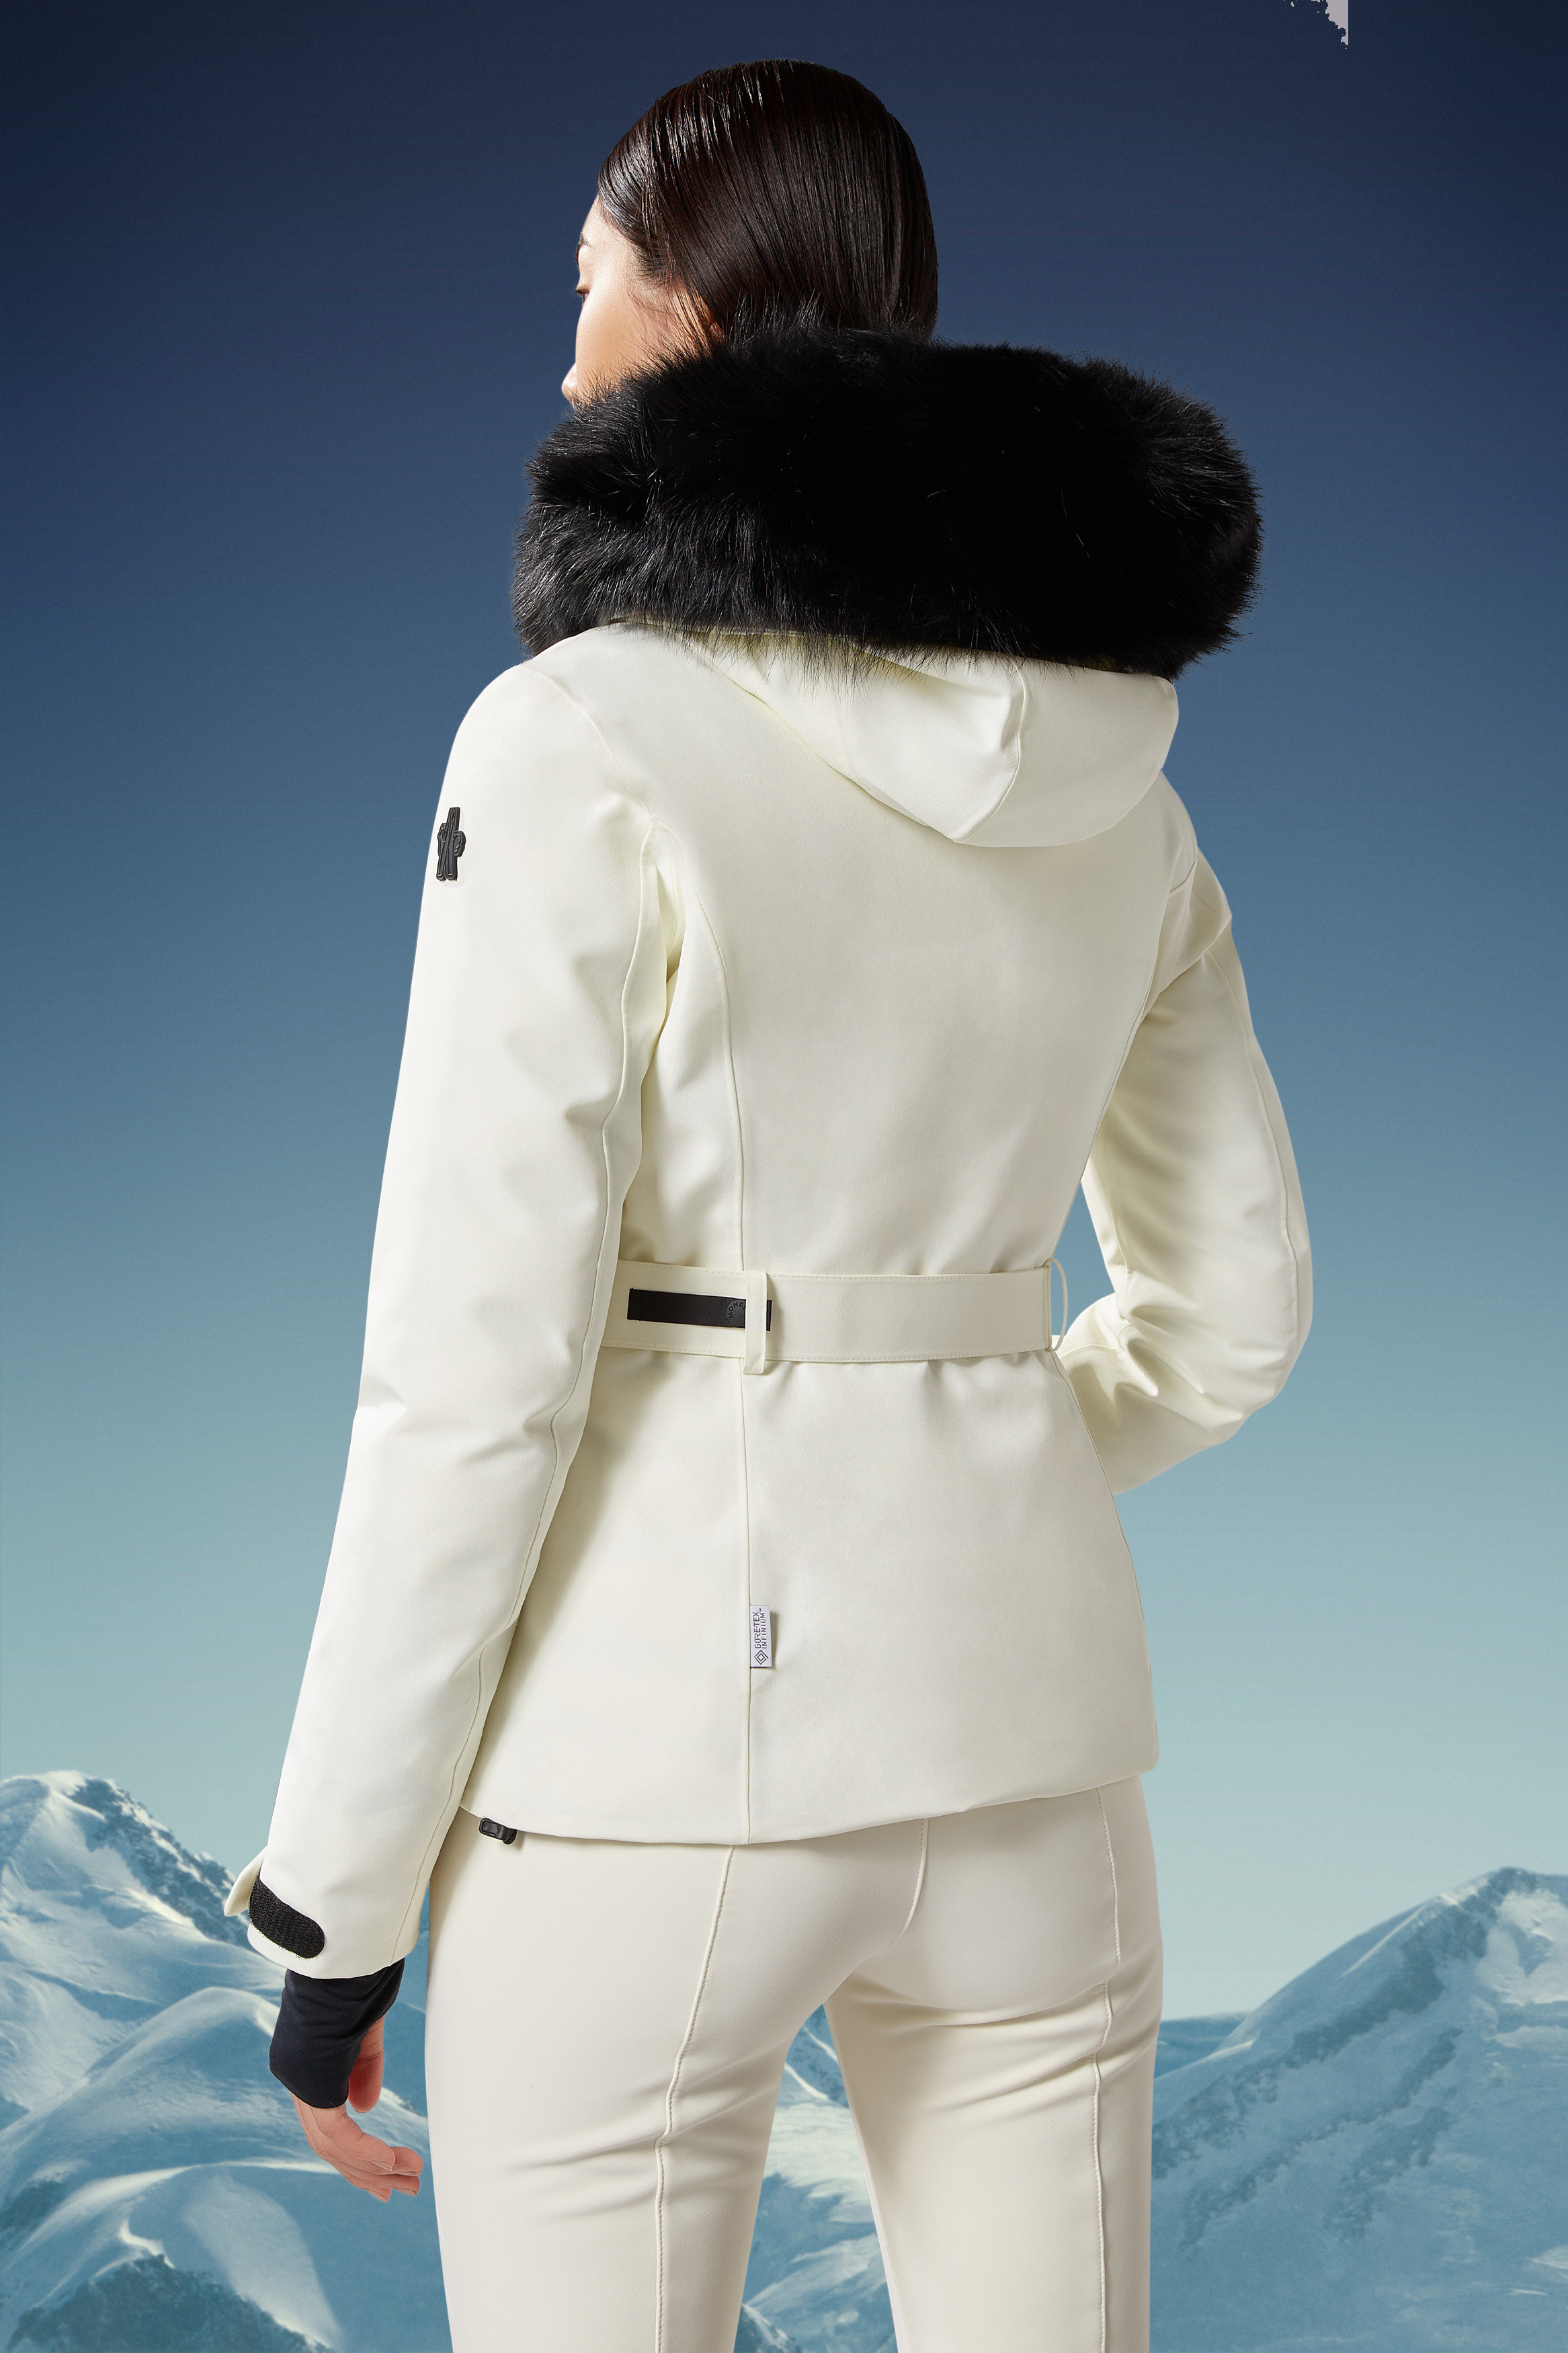 Ski Jackets for Women - Grenoble | Moncler US